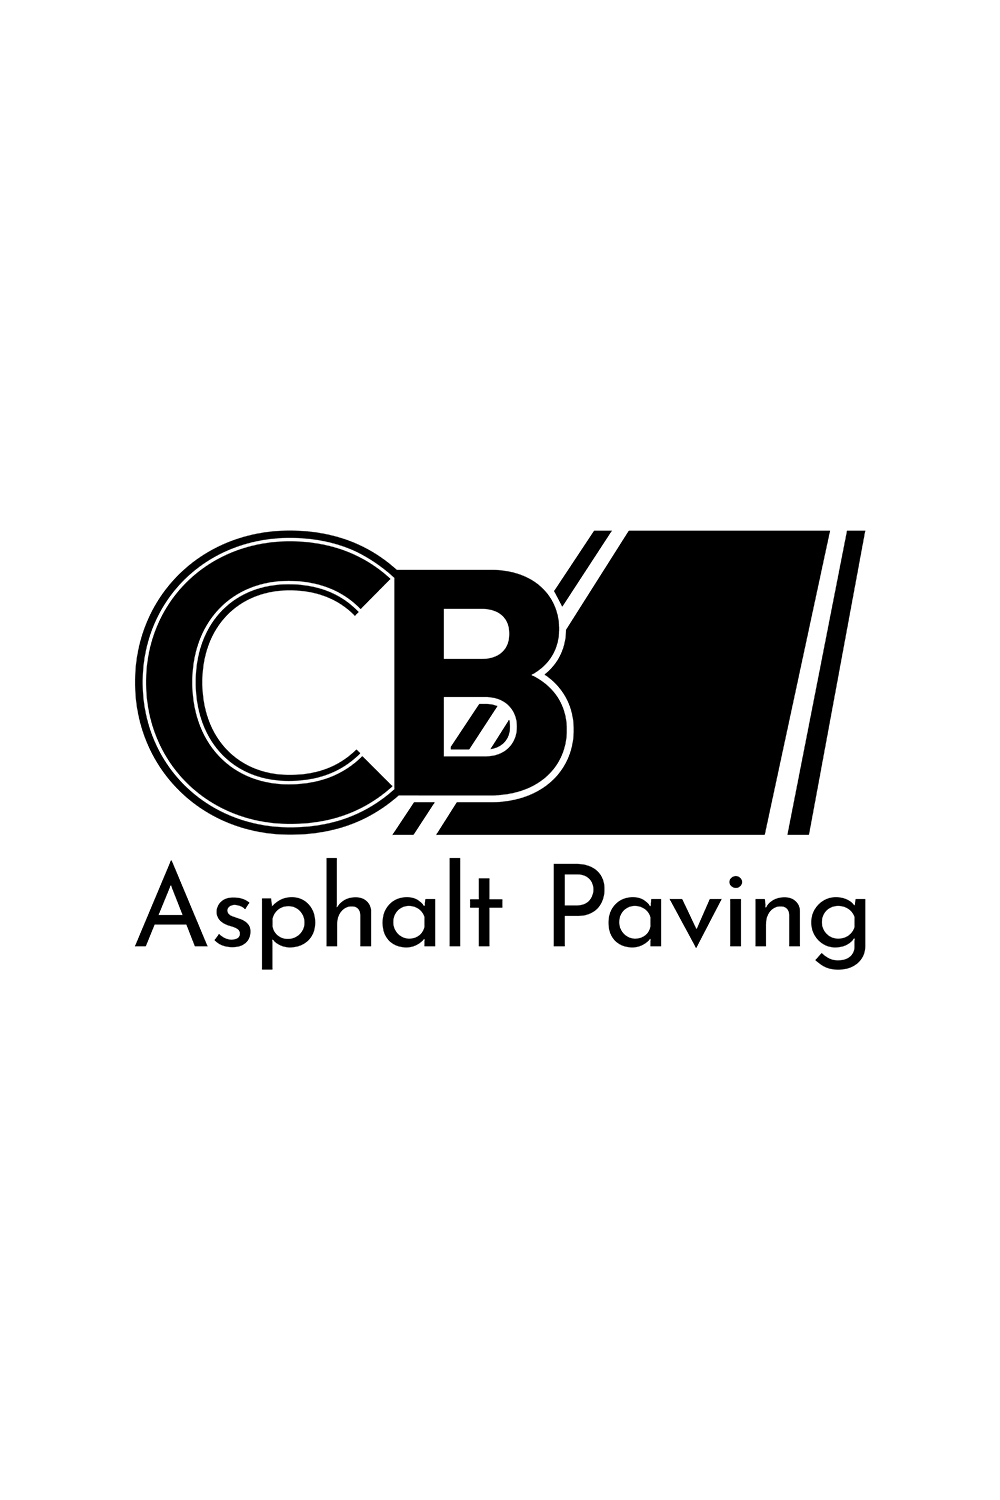 CB letter asphalt paving combination mark logo pinterest preview image.